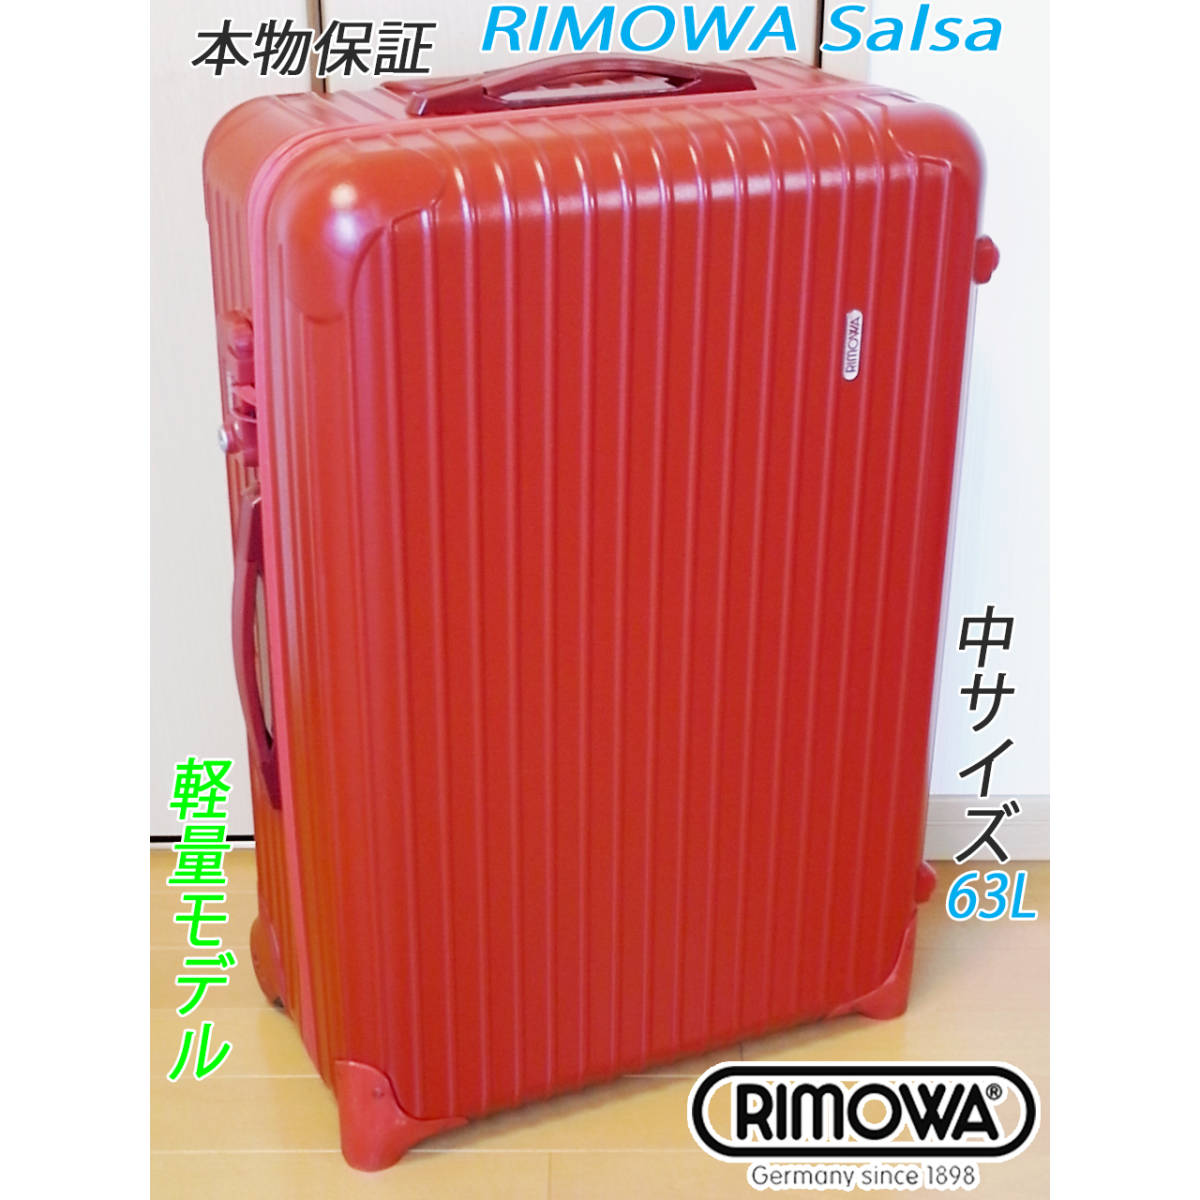 ◇RIMOWA/リモワ サルサ ベストサイズ 63L◇メンテ・クリーニング済